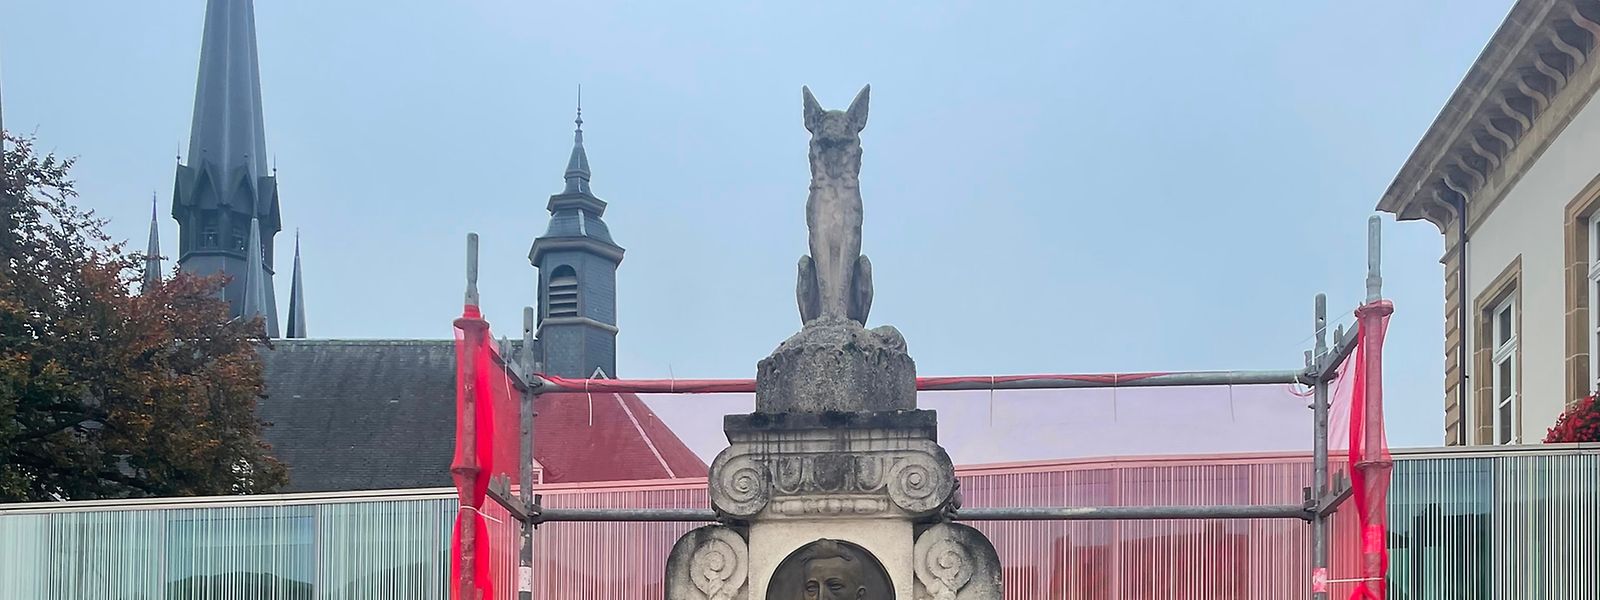 Seit 1932 steht die Fuchsstatue neben dem Gemeindehaus.